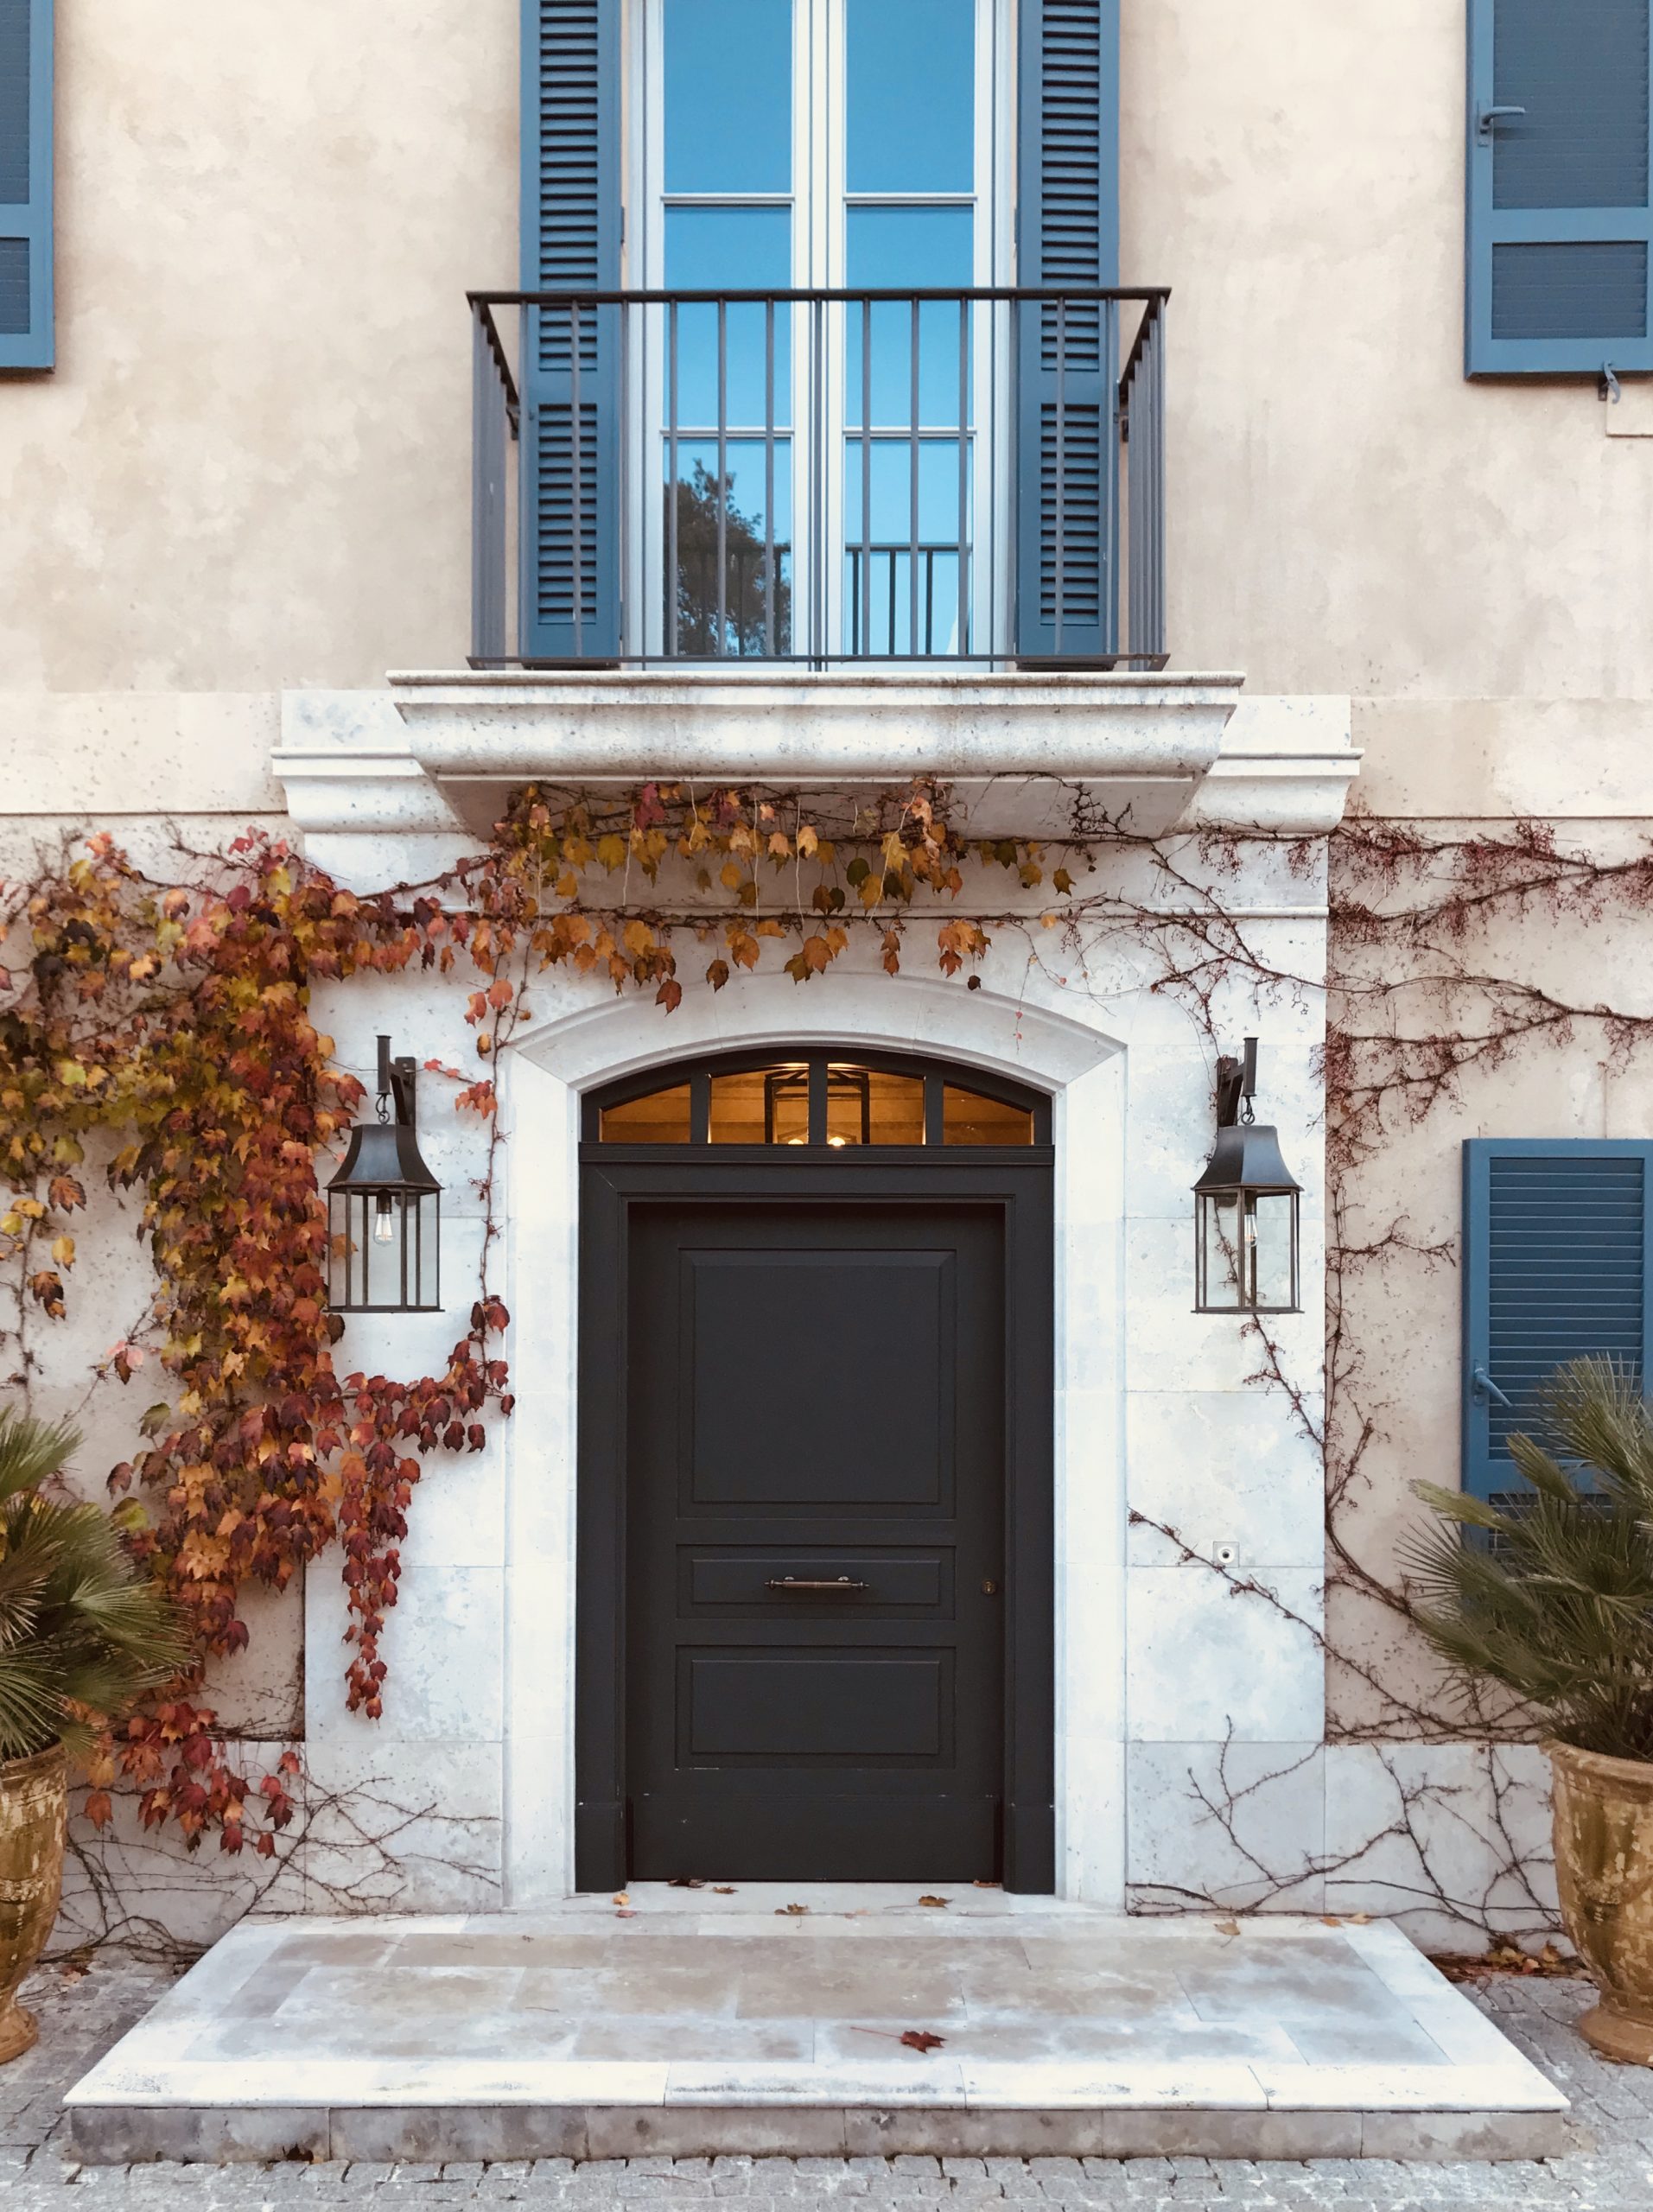 puerta de entrada y acceso a vivienda de estilo provenzal